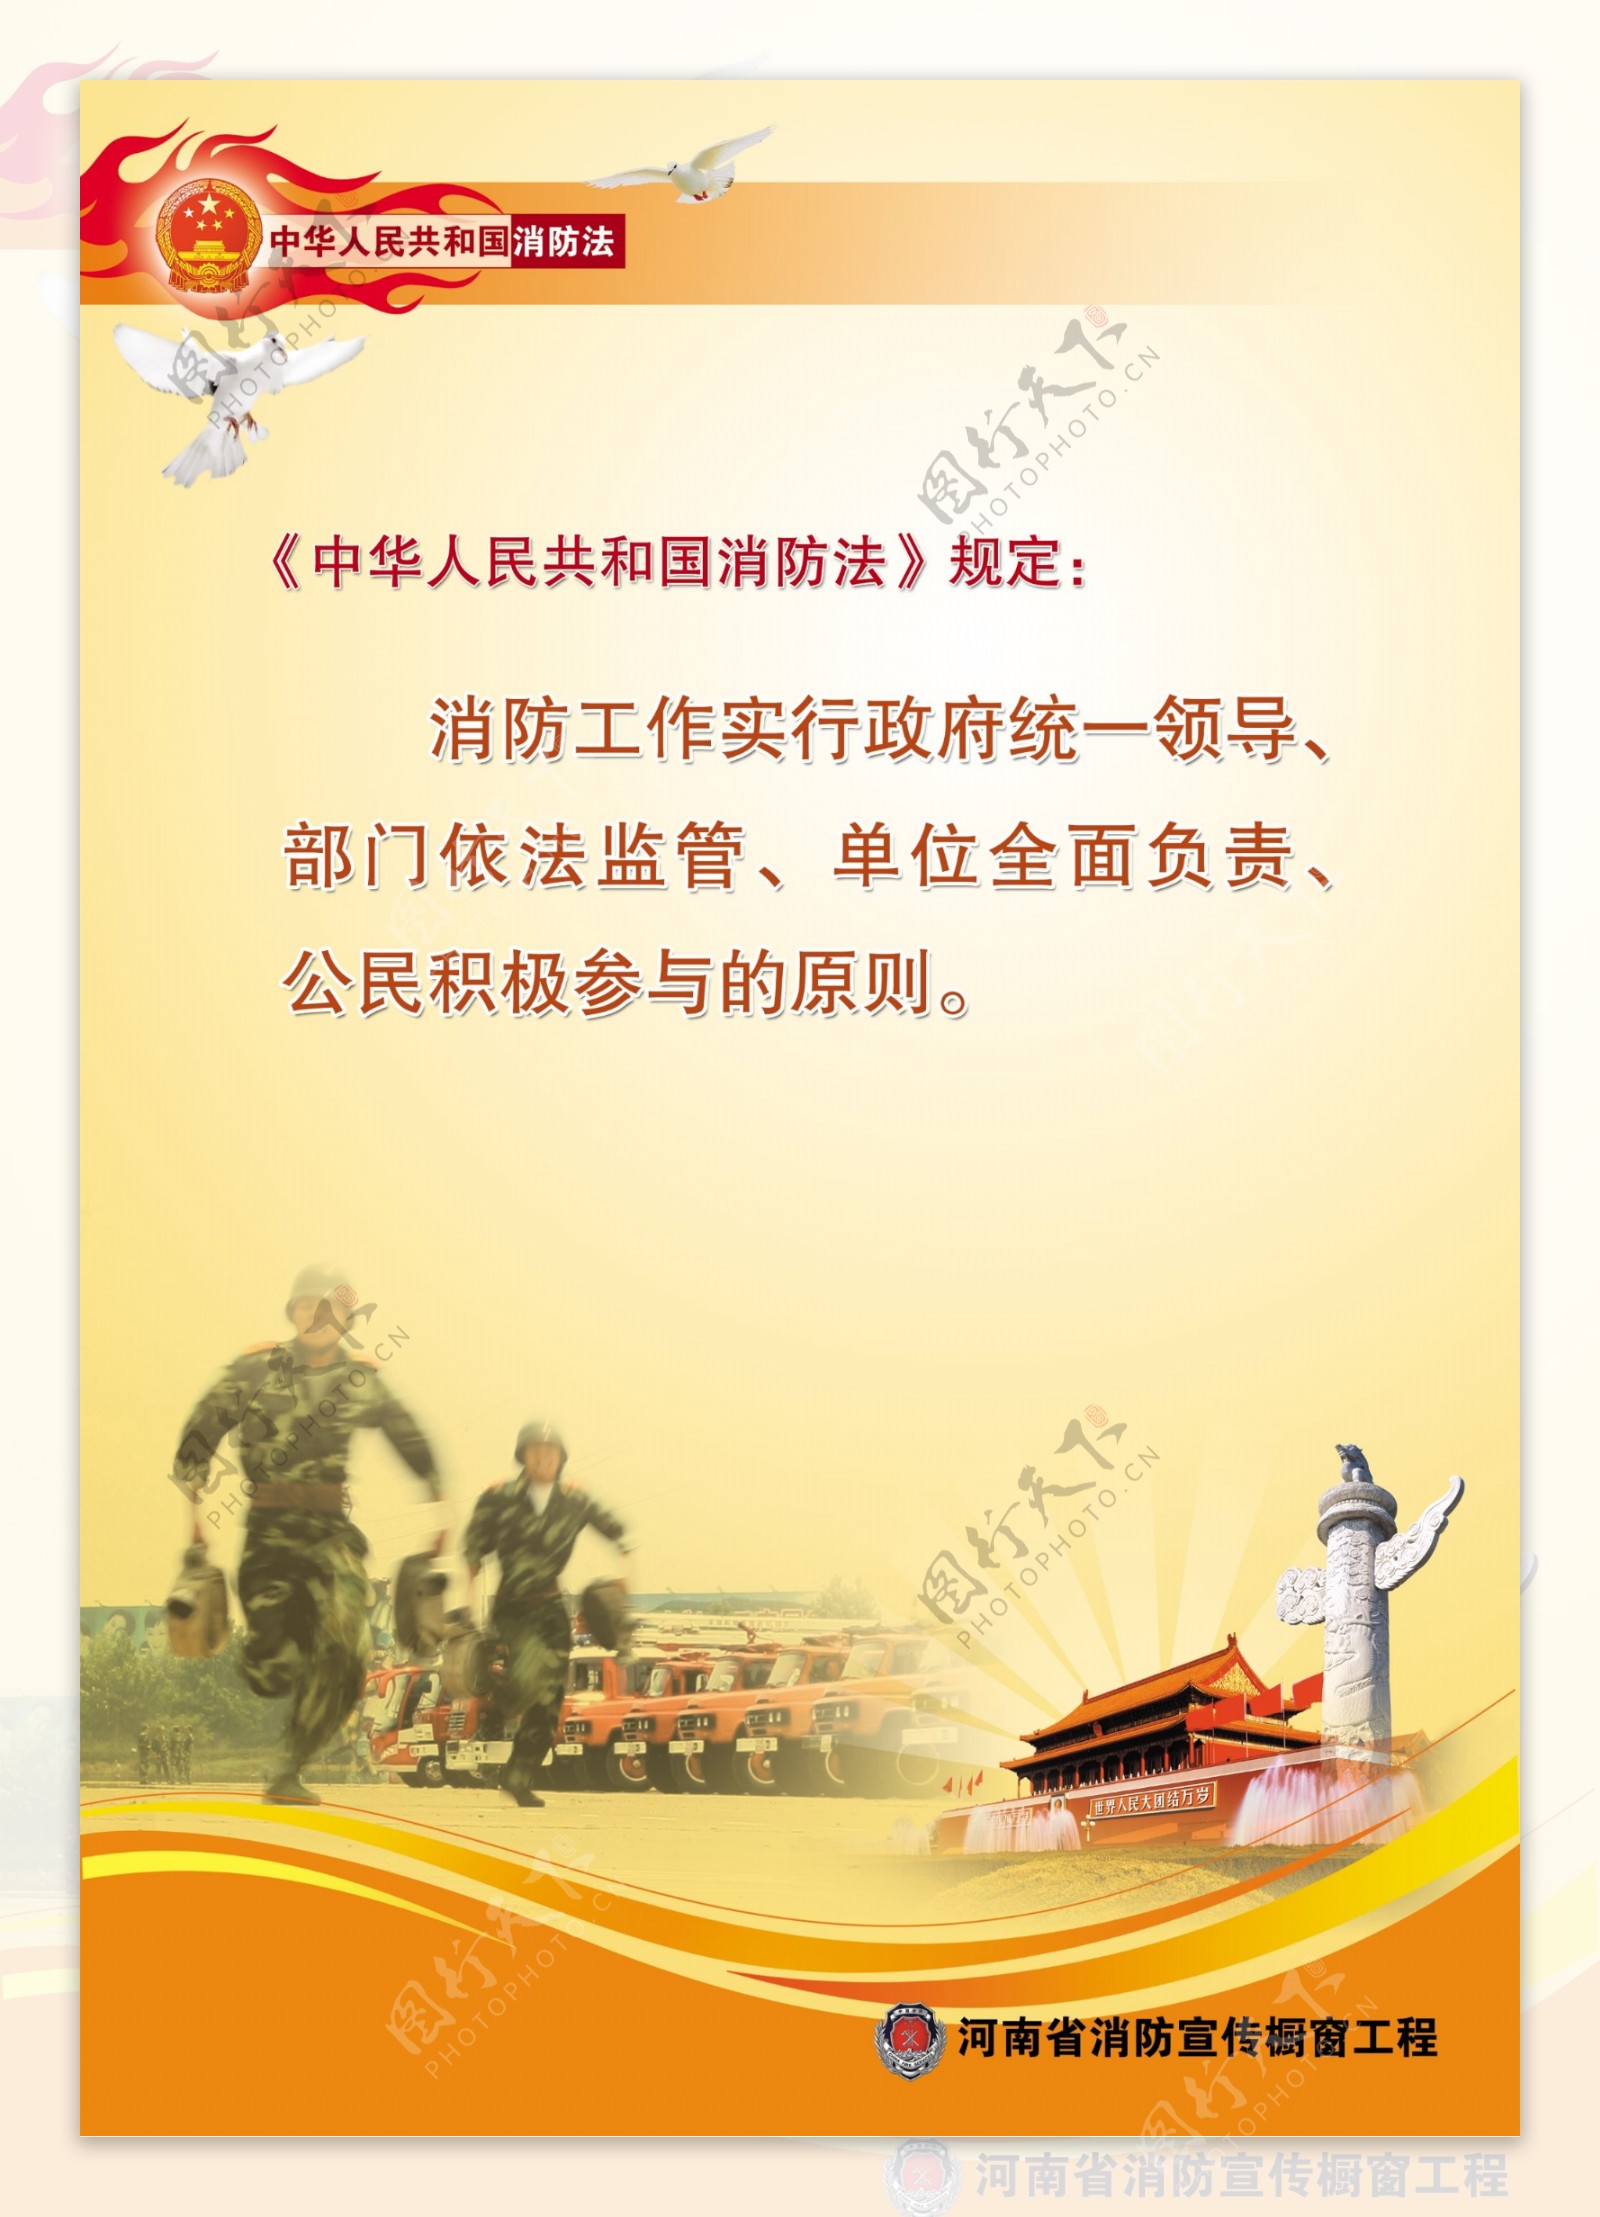 河南消防宣传橱窗工程中国消防法消防宣传竖1图片